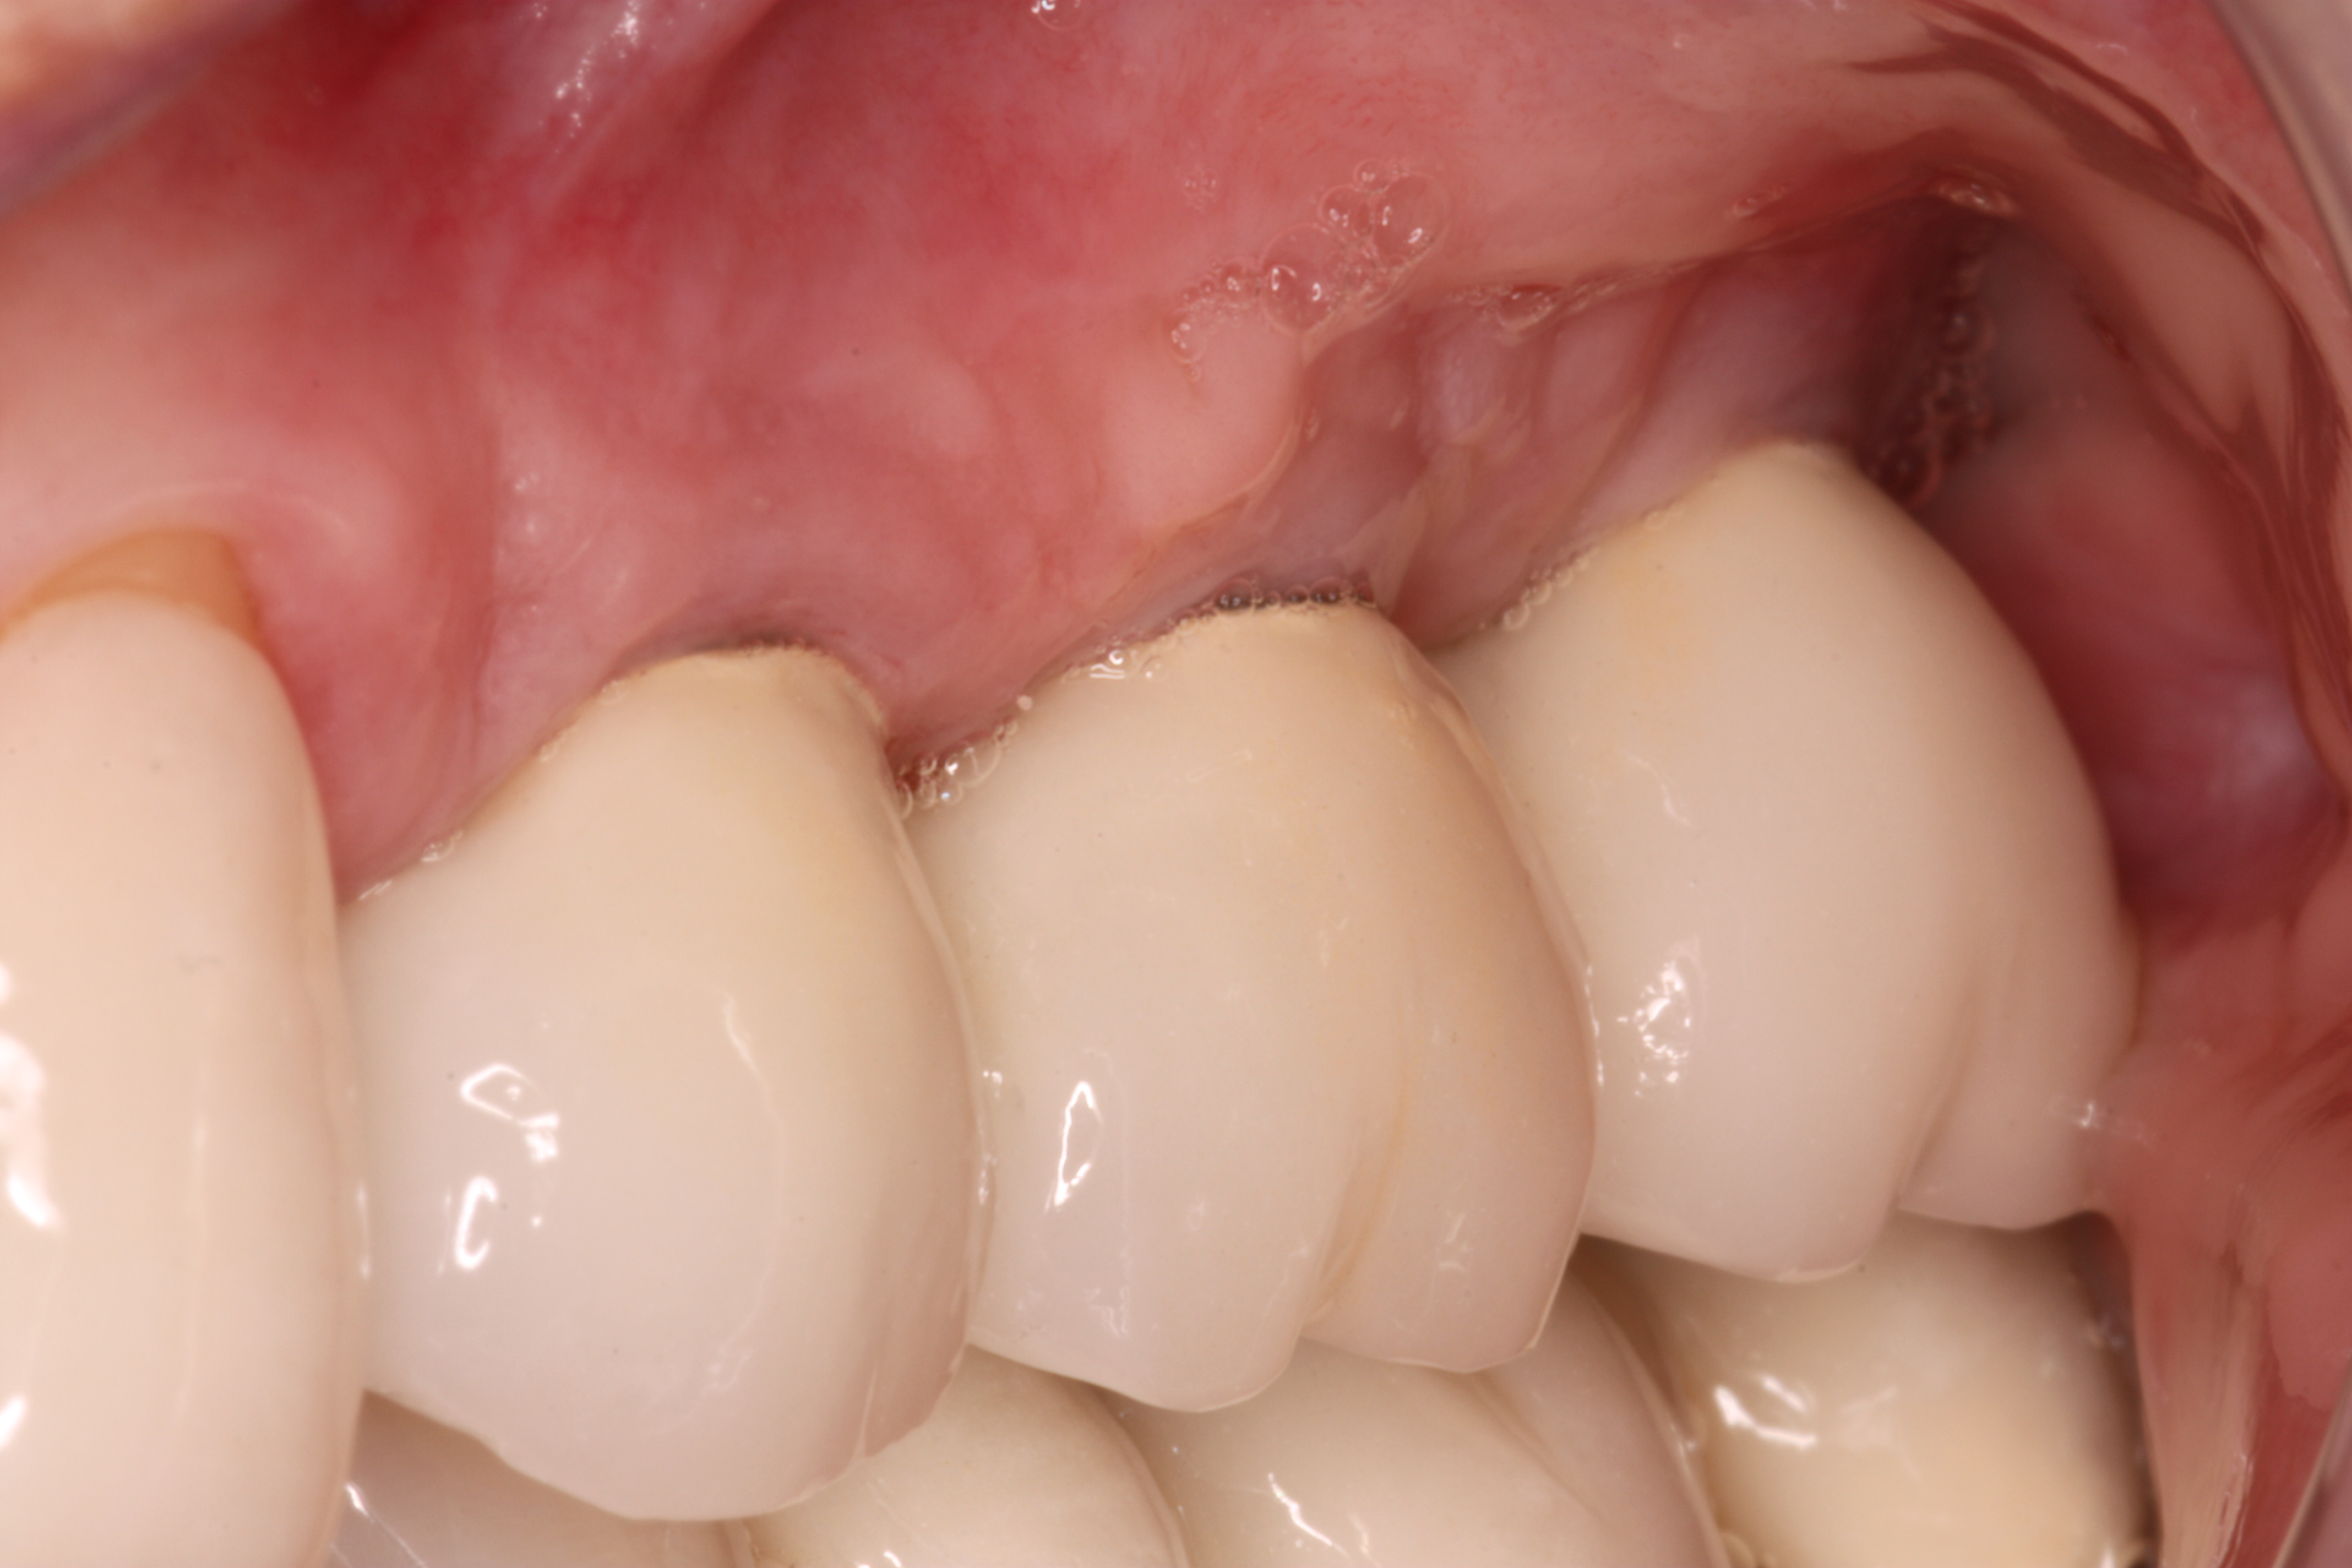 Restored Upper Left Bone Level Dental Implants